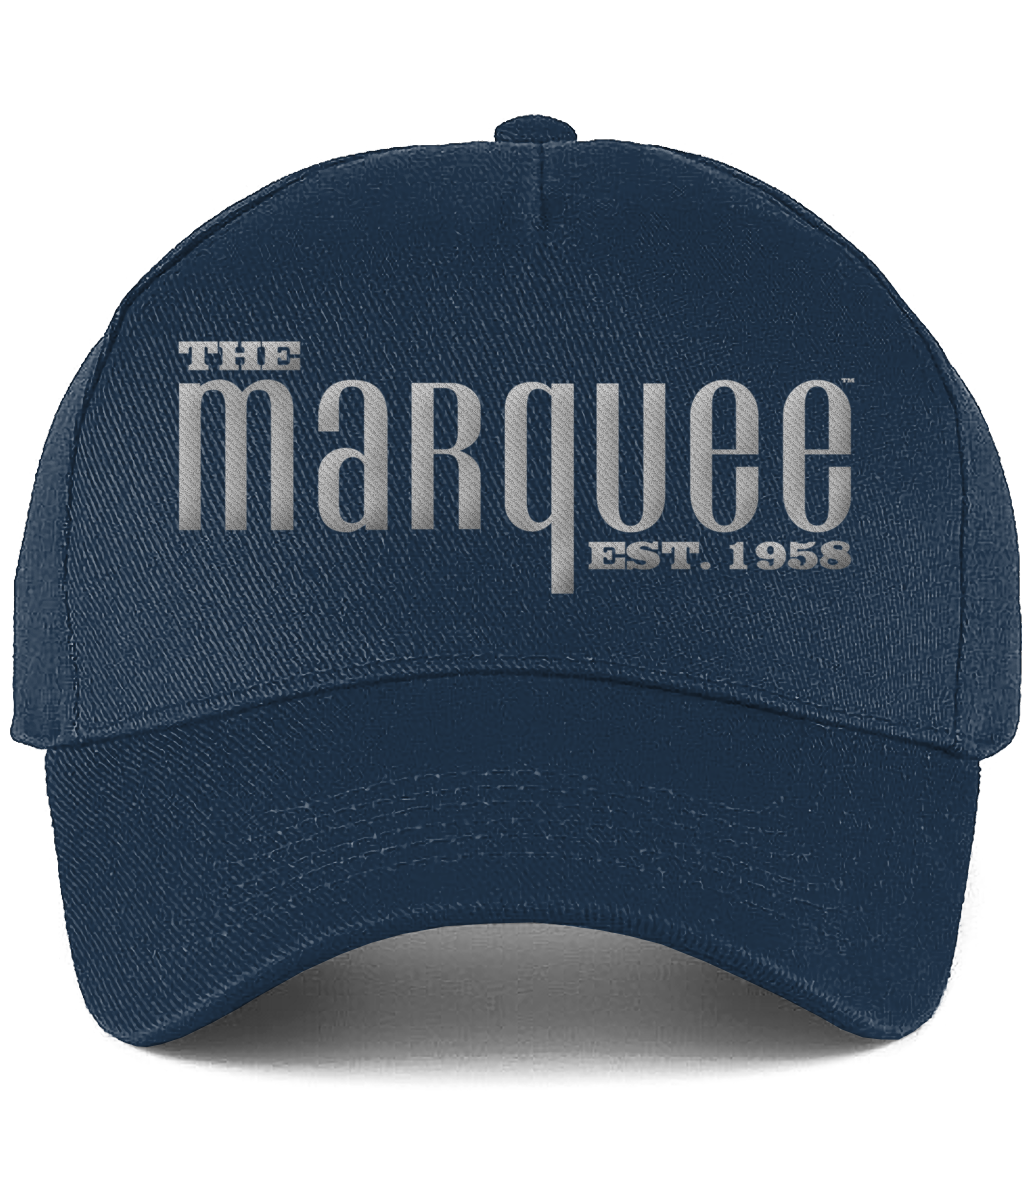 The Marquee Baseball Cap